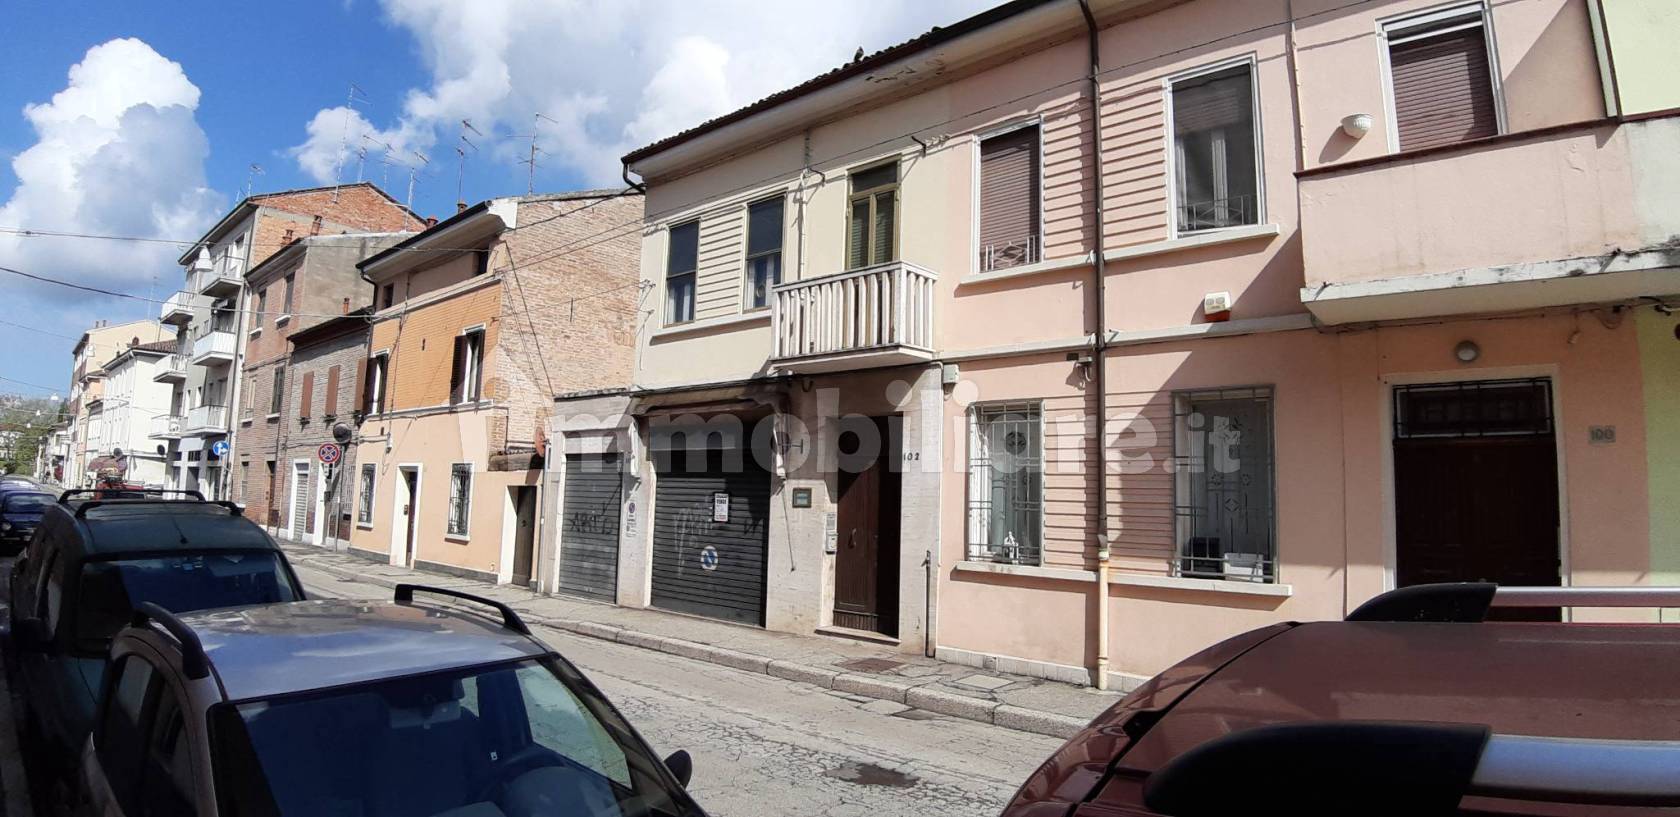 Case in vendita in Vicolo Santa Croce, Ferrara - Immobiliare.it